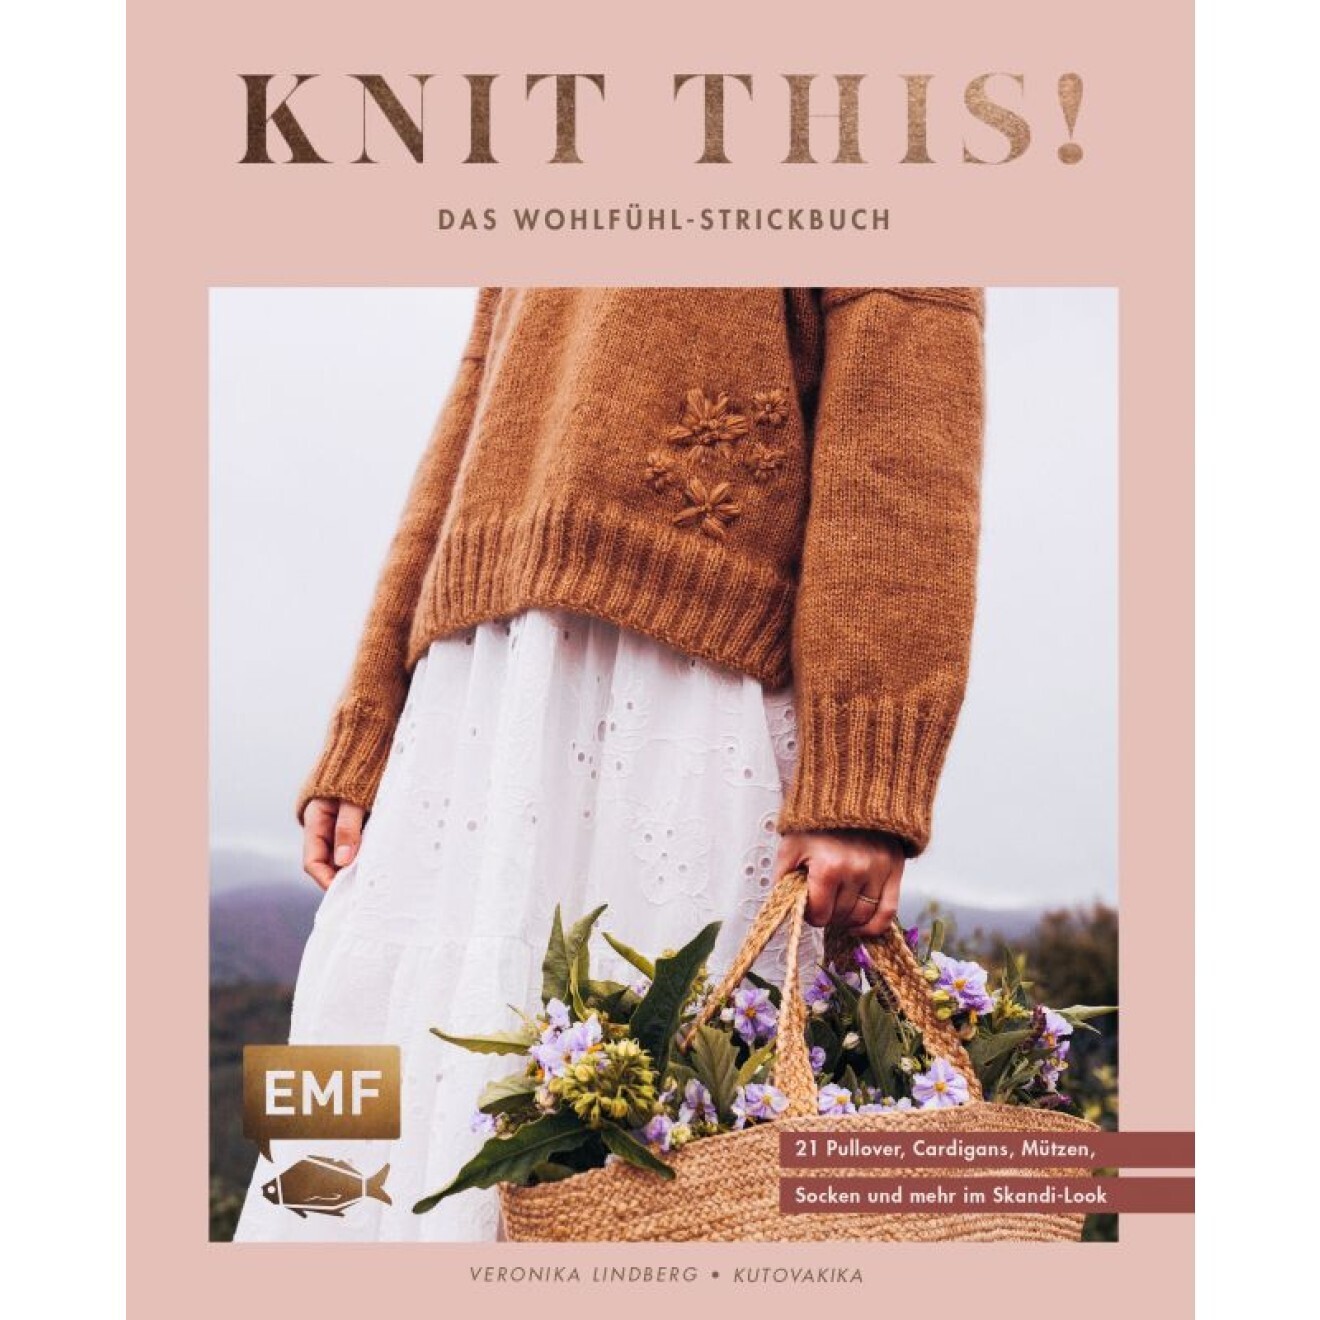 Knit this! - Das Wohlfühl-Strickbuch von Kutovakika